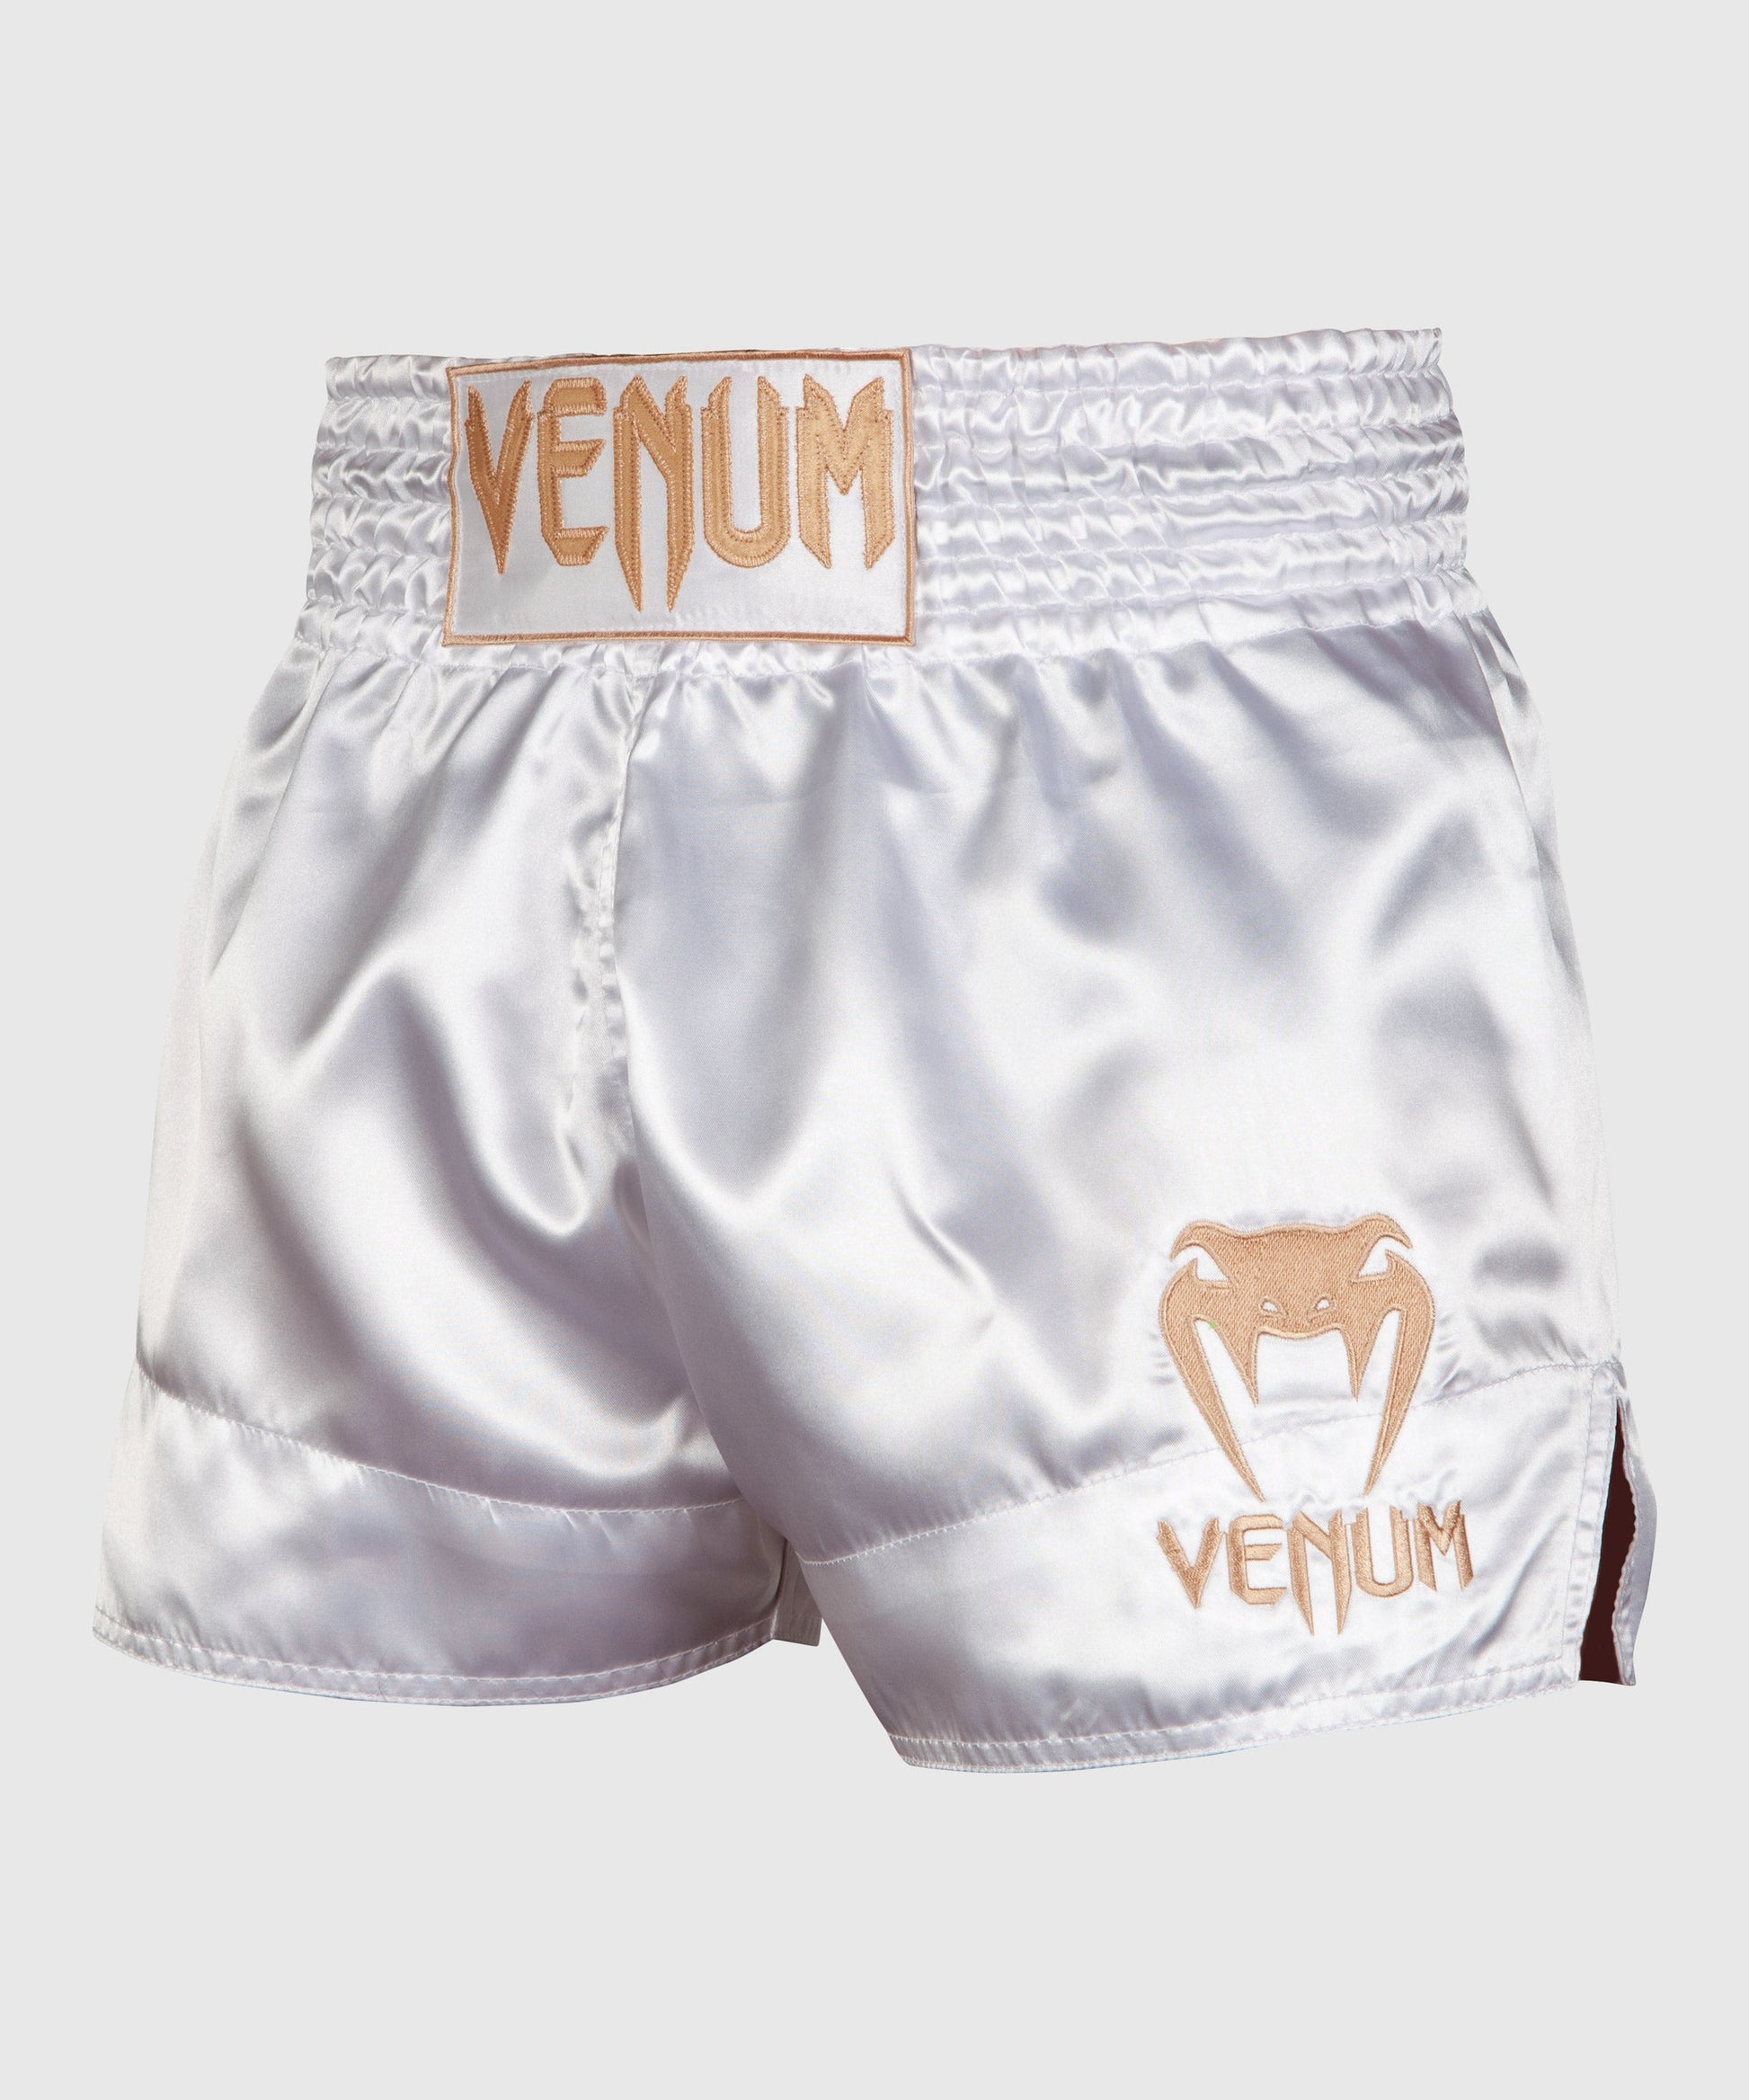 Short de Boxe homme – Venum France